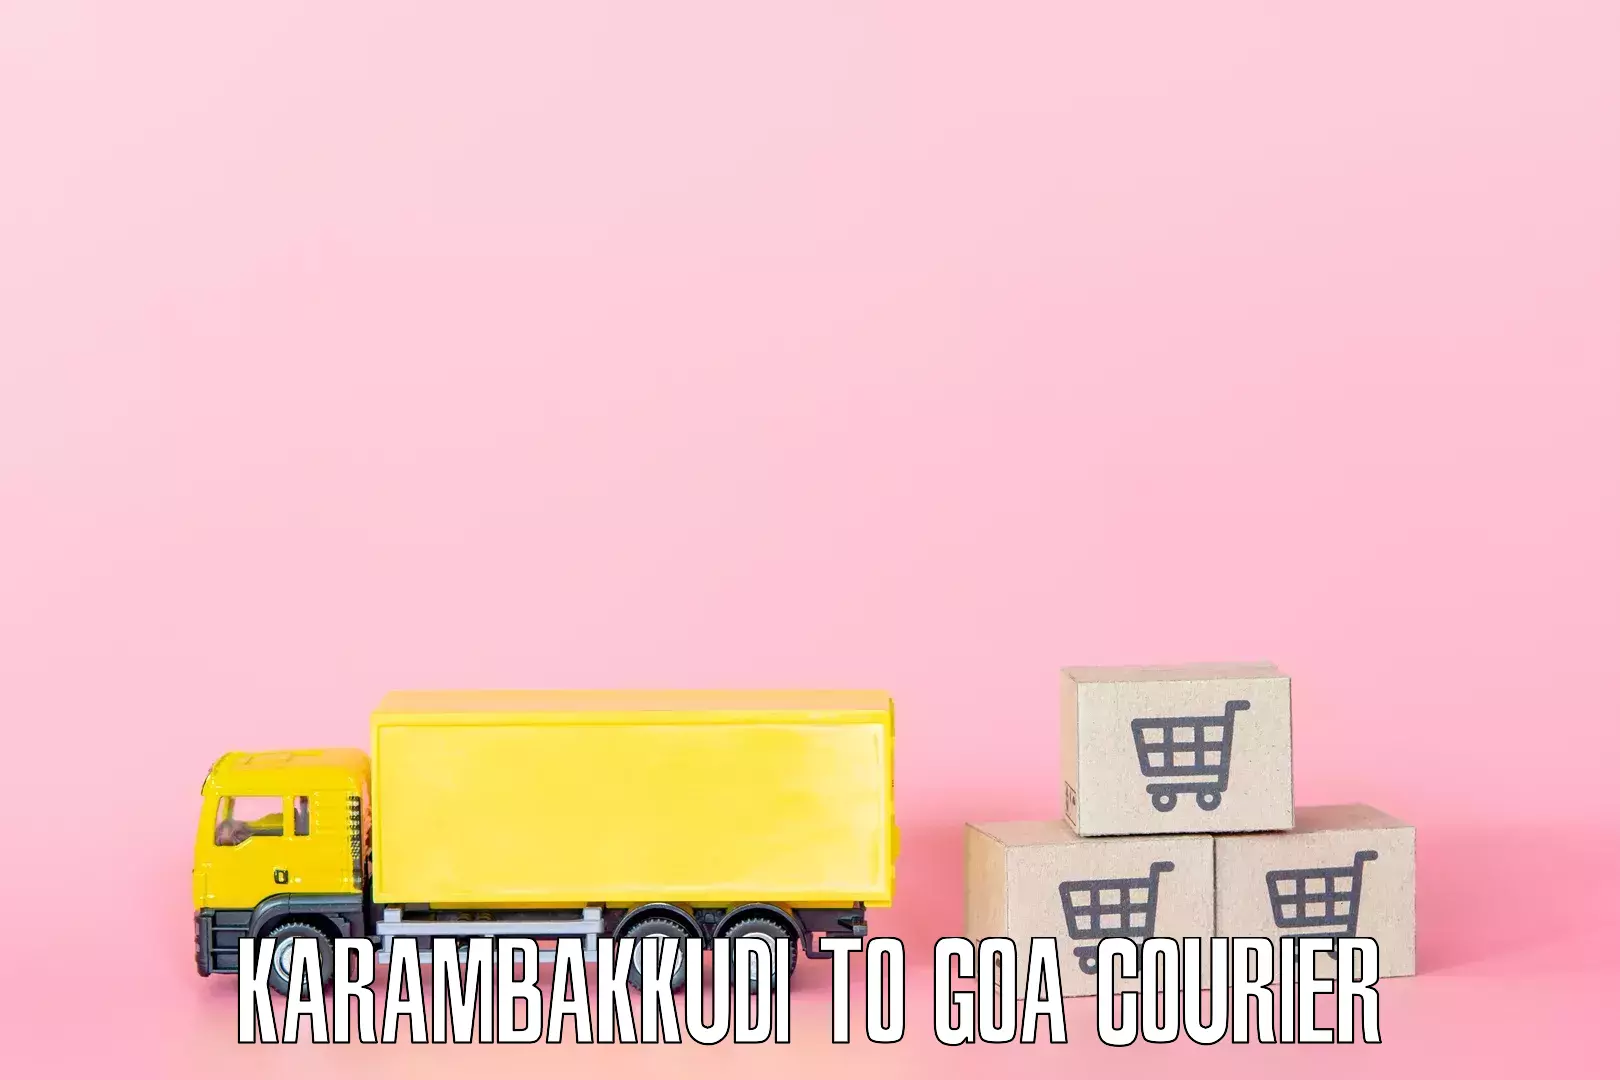 Local furniture movers Karambakkudi to Goa